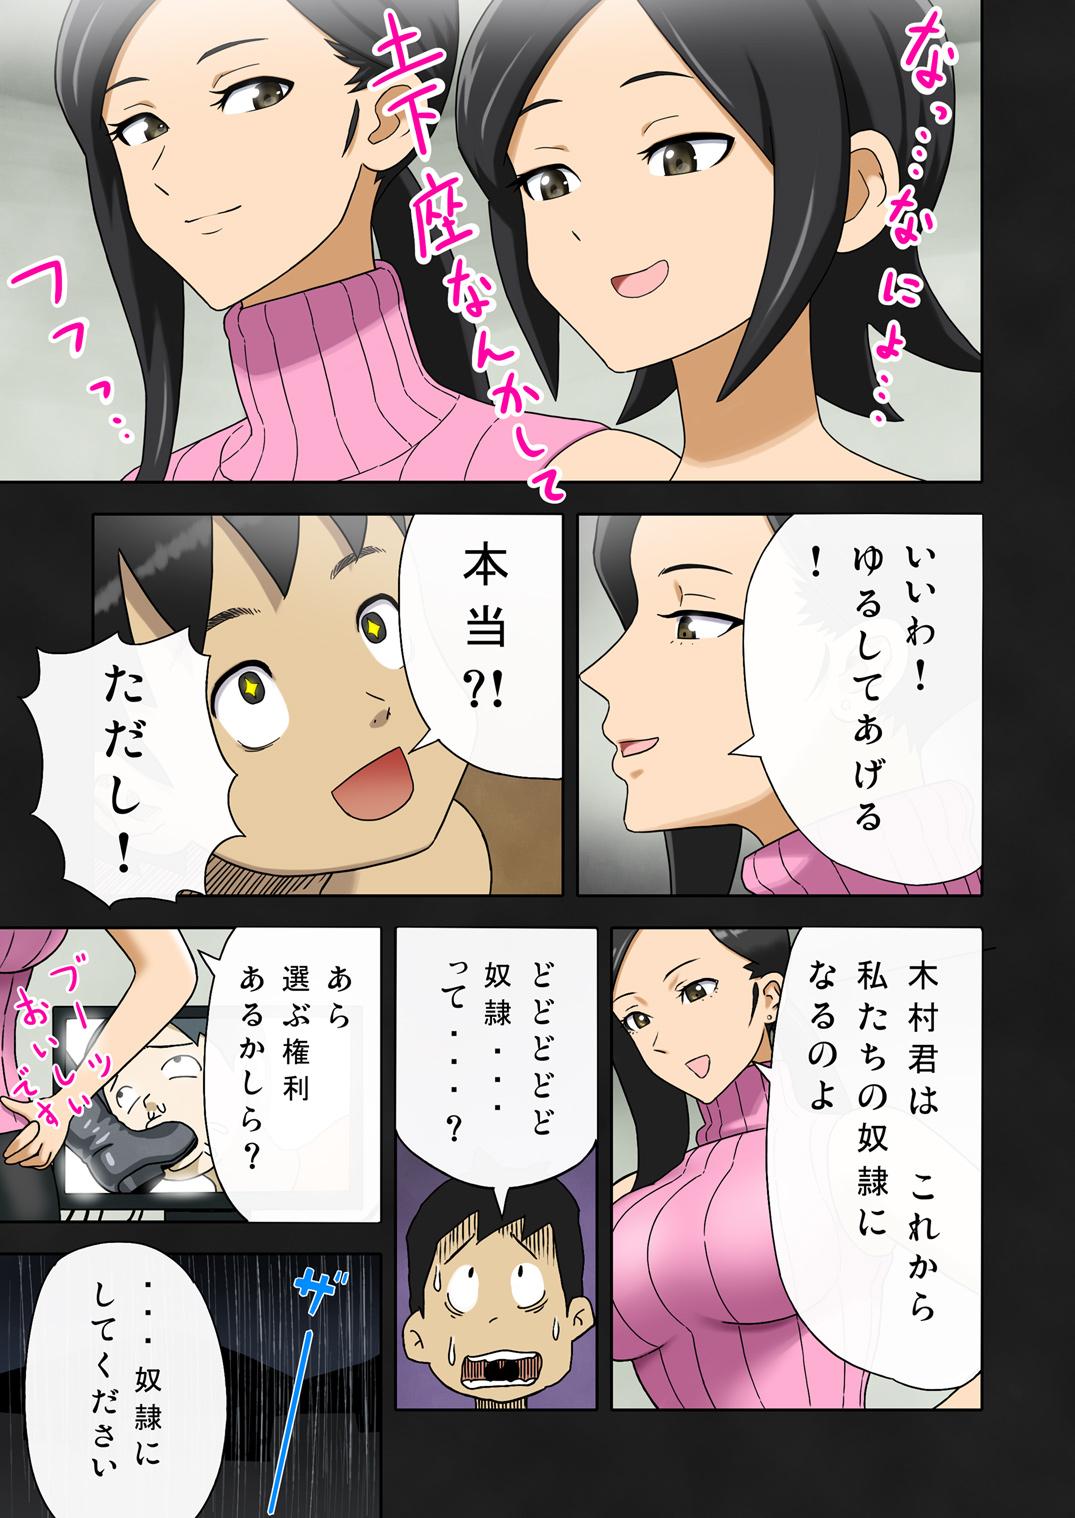 [Enka Boots] Enka Boots no Manga 1 - Juku no Sensei ga Joou-sama V2.0 10